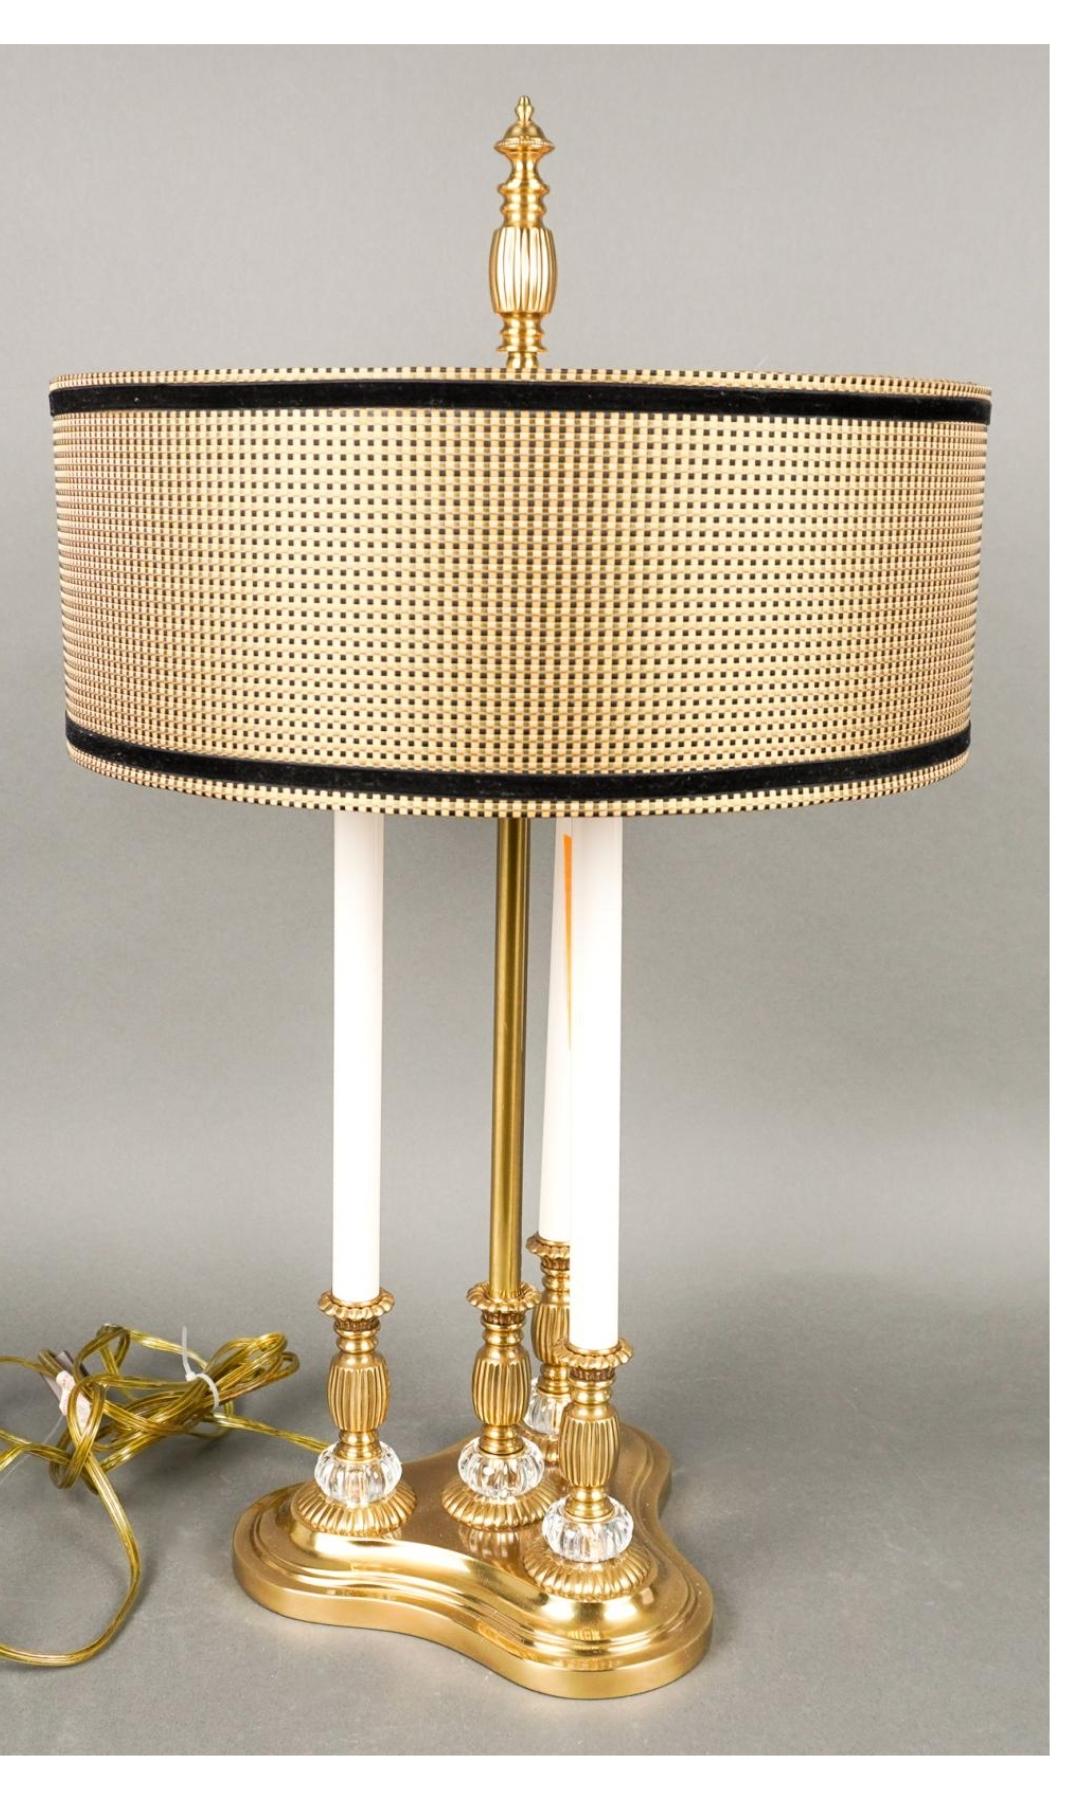 Une superbe lampe bouillote en laiton de Frederick Cooper avec son abat-jour original en velours de soie noir et or/jaune. Excellent état
Mesure à la base 10